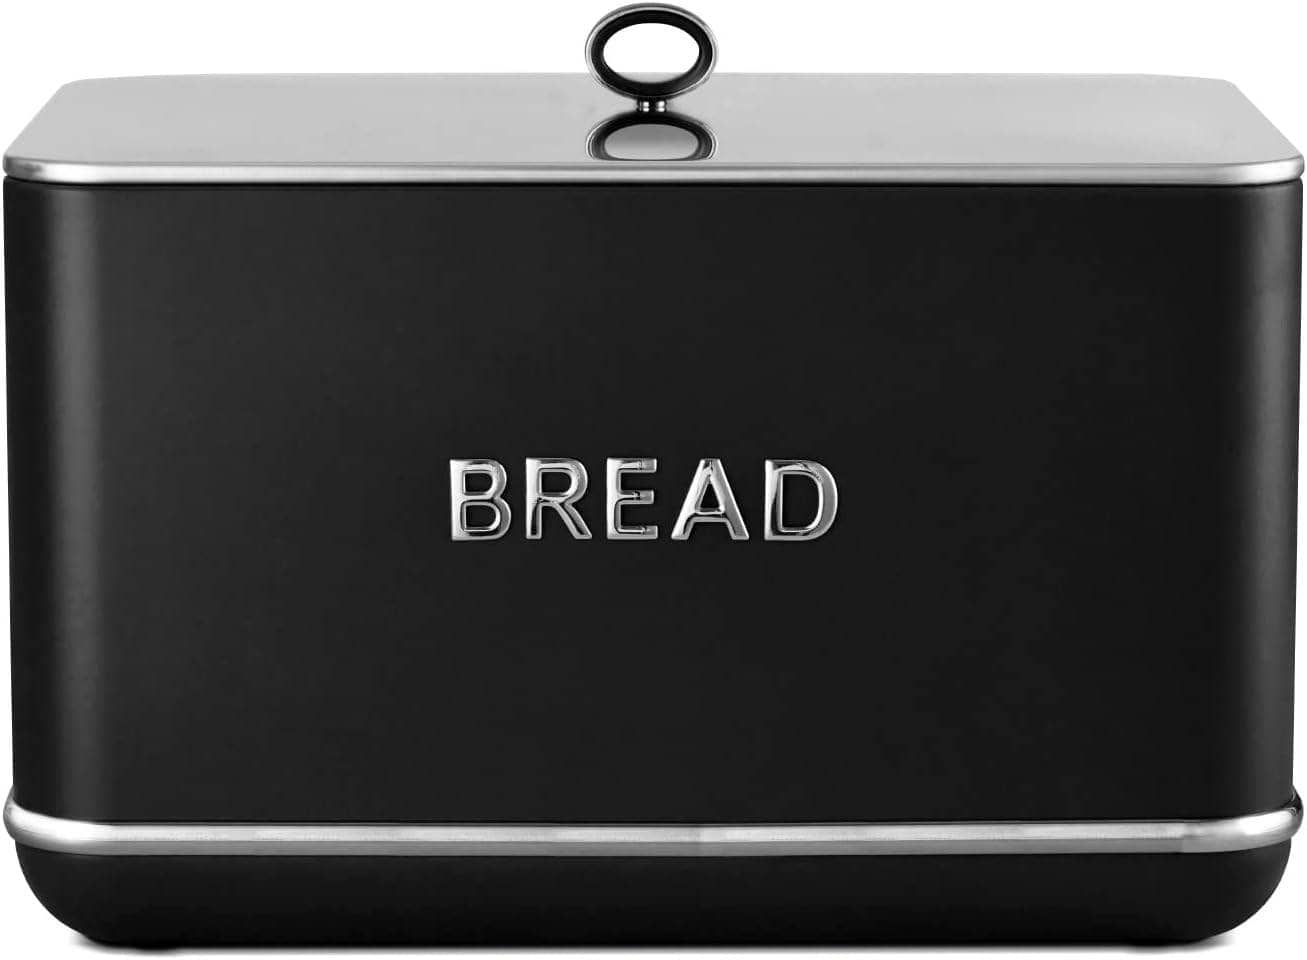 Kitchenware  -  Renaissance Bread Bin - Black  -  60008012